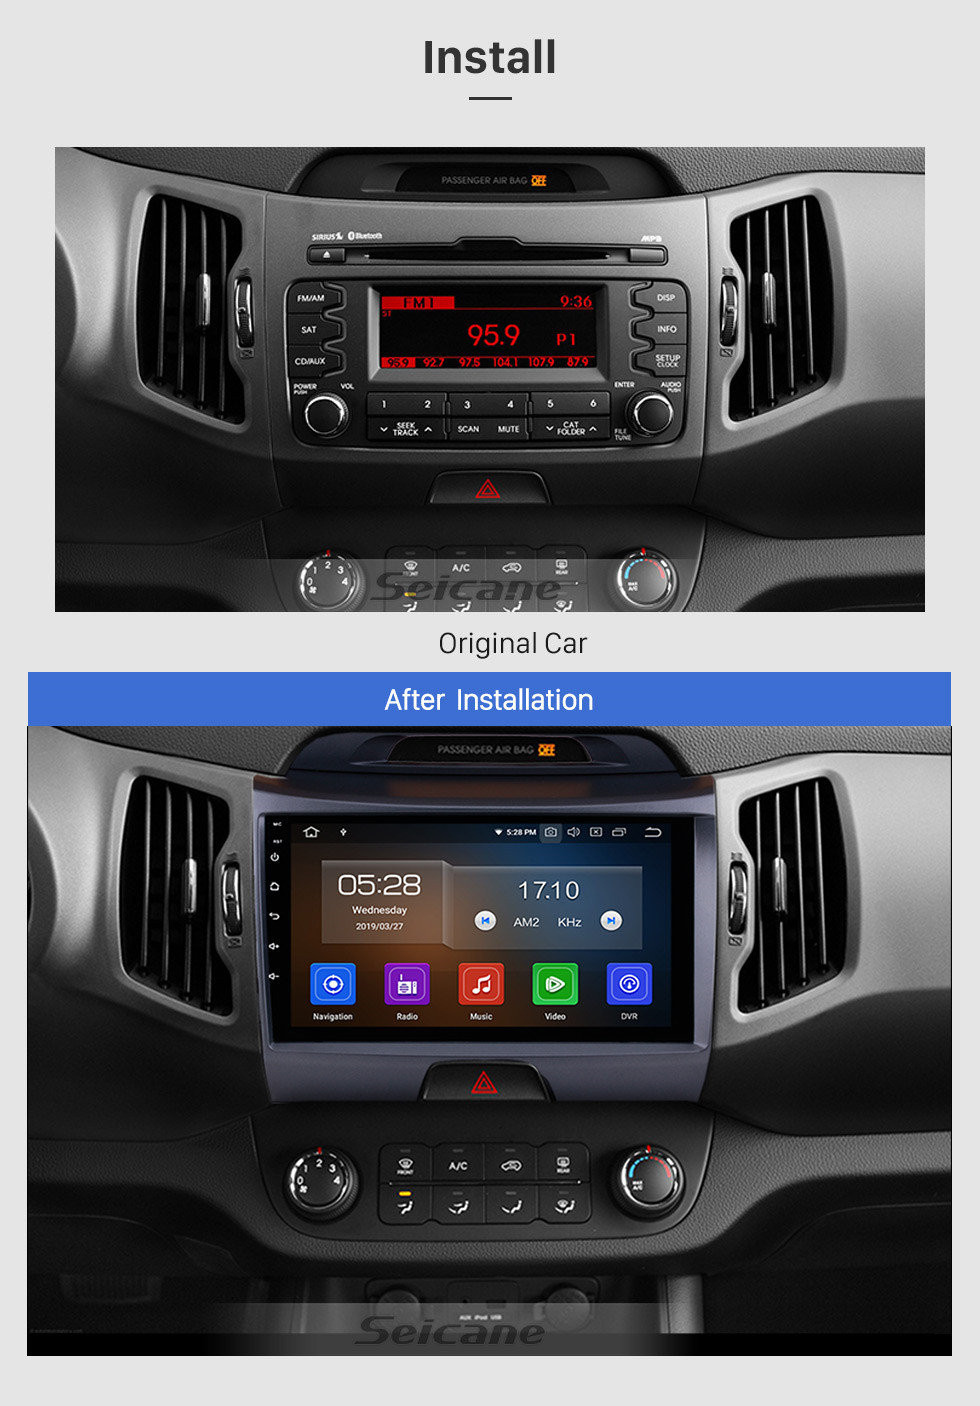 Seicane 2010 2011 2012 2013 2014 2014 KIA Sportage Alle in einem Android 11.0 9-Zoll-HD-Touchscreen-Autoradio GPS-Navigation Bluetooth WIFI USB-Spiegel-Link-Unterstützung 4G Lenkradsteuerung DVR OBD2